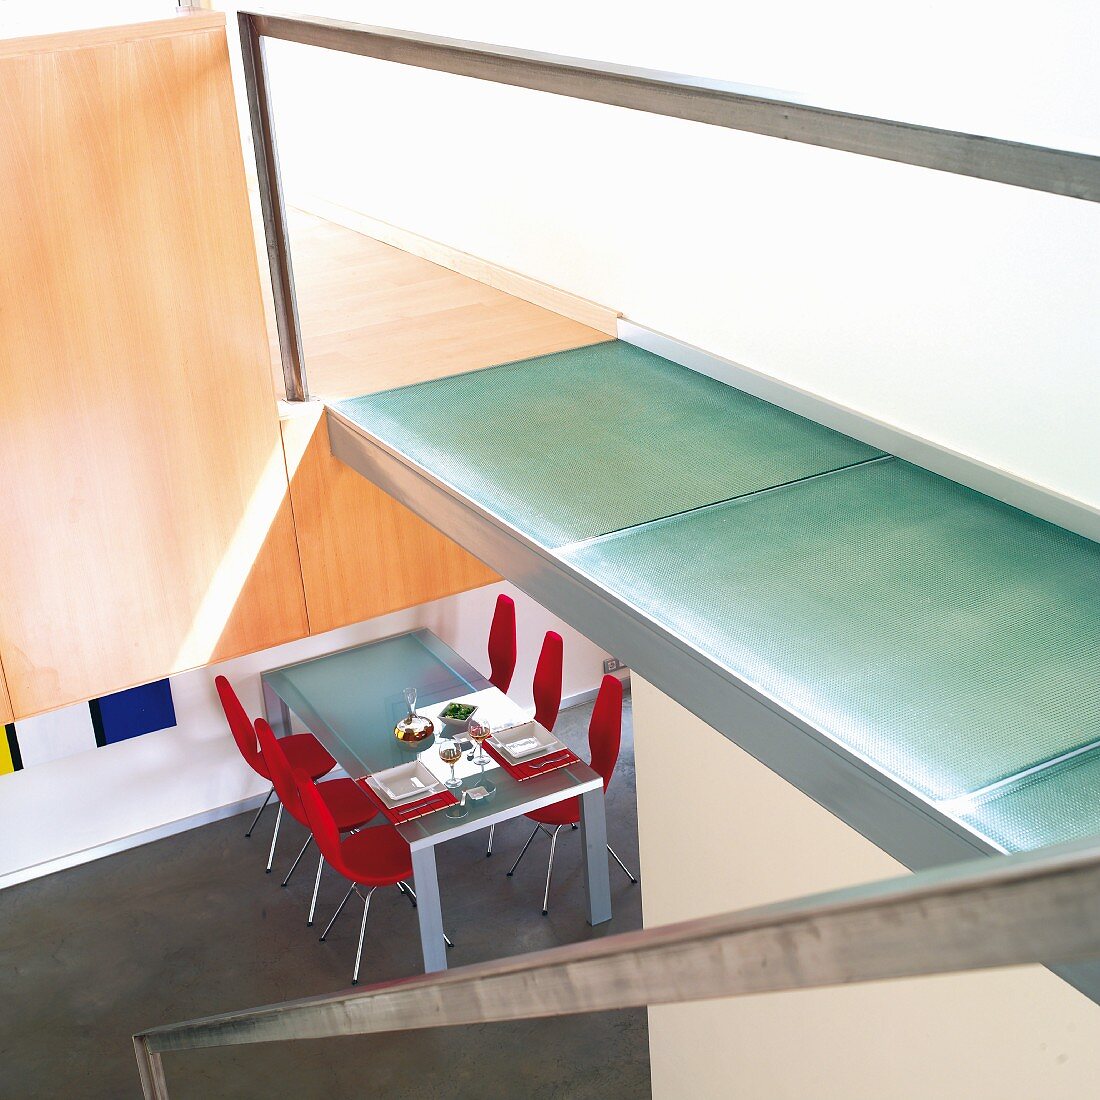 Treppe mit Steg an der Seite, auf Boden Glaspaneelen, Blick in offenen Essbereich mit Tisch und roten Stühlen